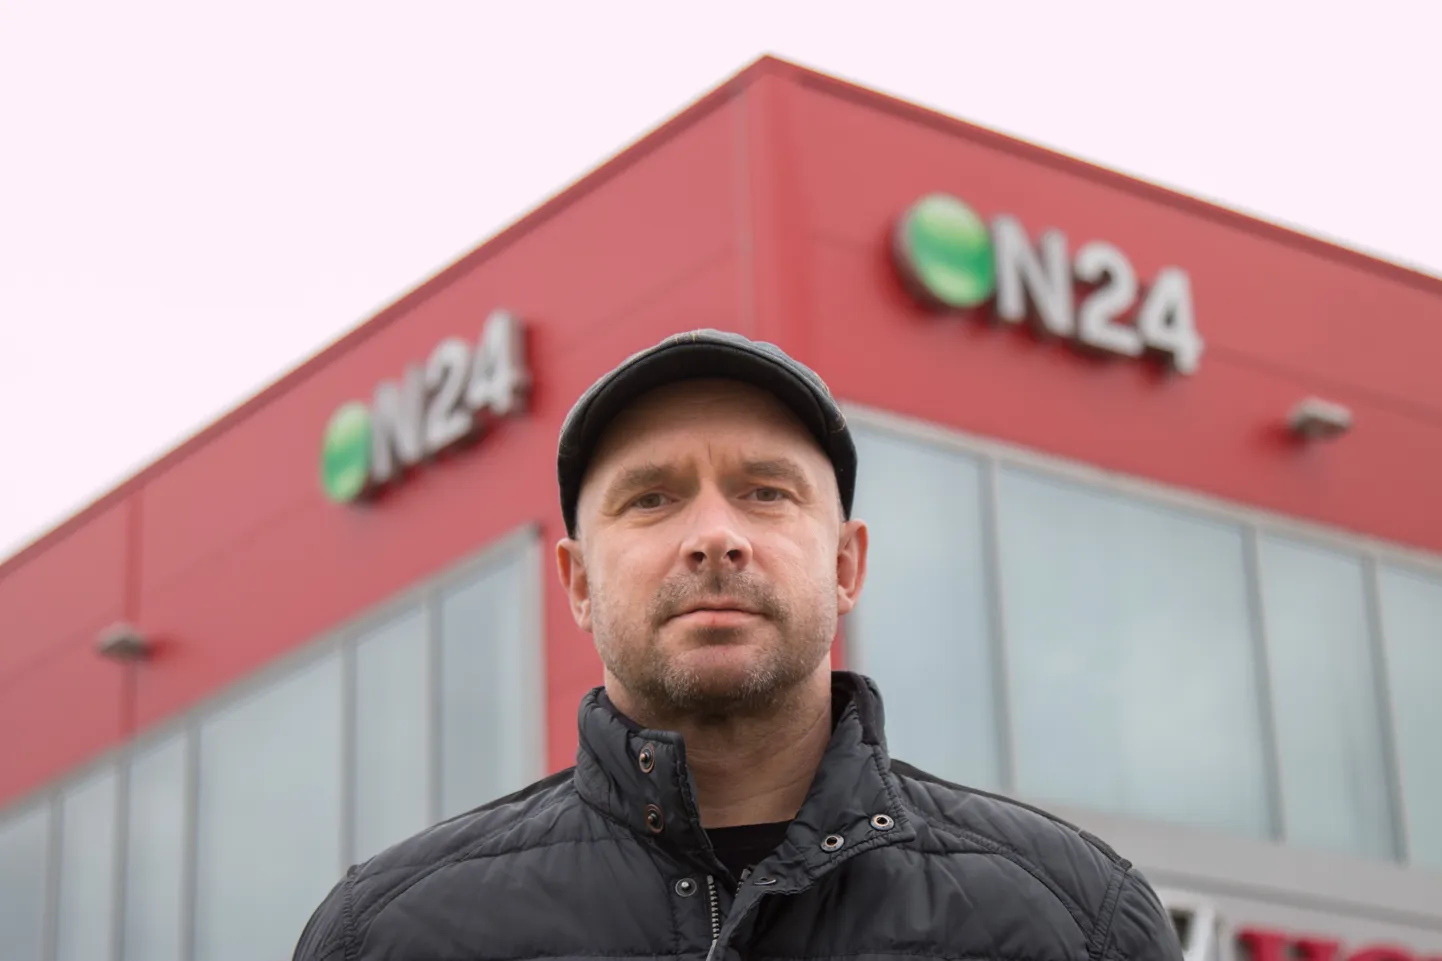 Oktoobris Sakalale antud usutluses kinnitas ettevõtte nõukogu liige Peep Kuld, et Eestis ei suuda mitte keegi teine peale ON24 interneti mööblimüügiga kasumlikult tegeleda.